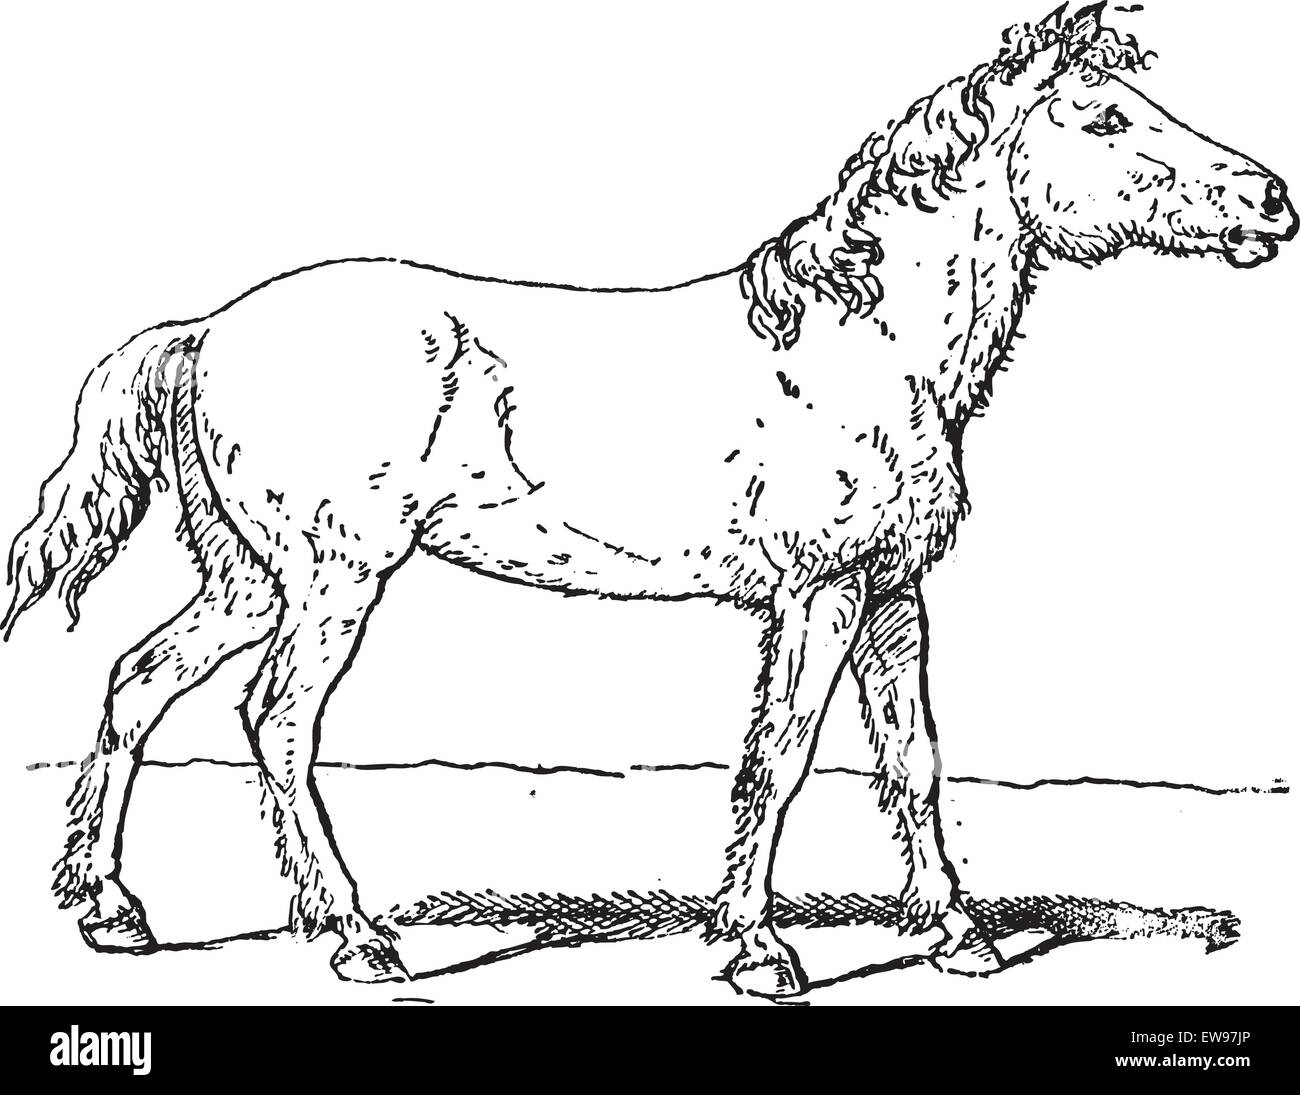 Alten graviert Illustration des eurasischen Wildpferdes, Tarpan oder Equus Ferus Ferus oder Equus Gmelini oder Equus Silvaticus.  Dictionar Stock Vektor